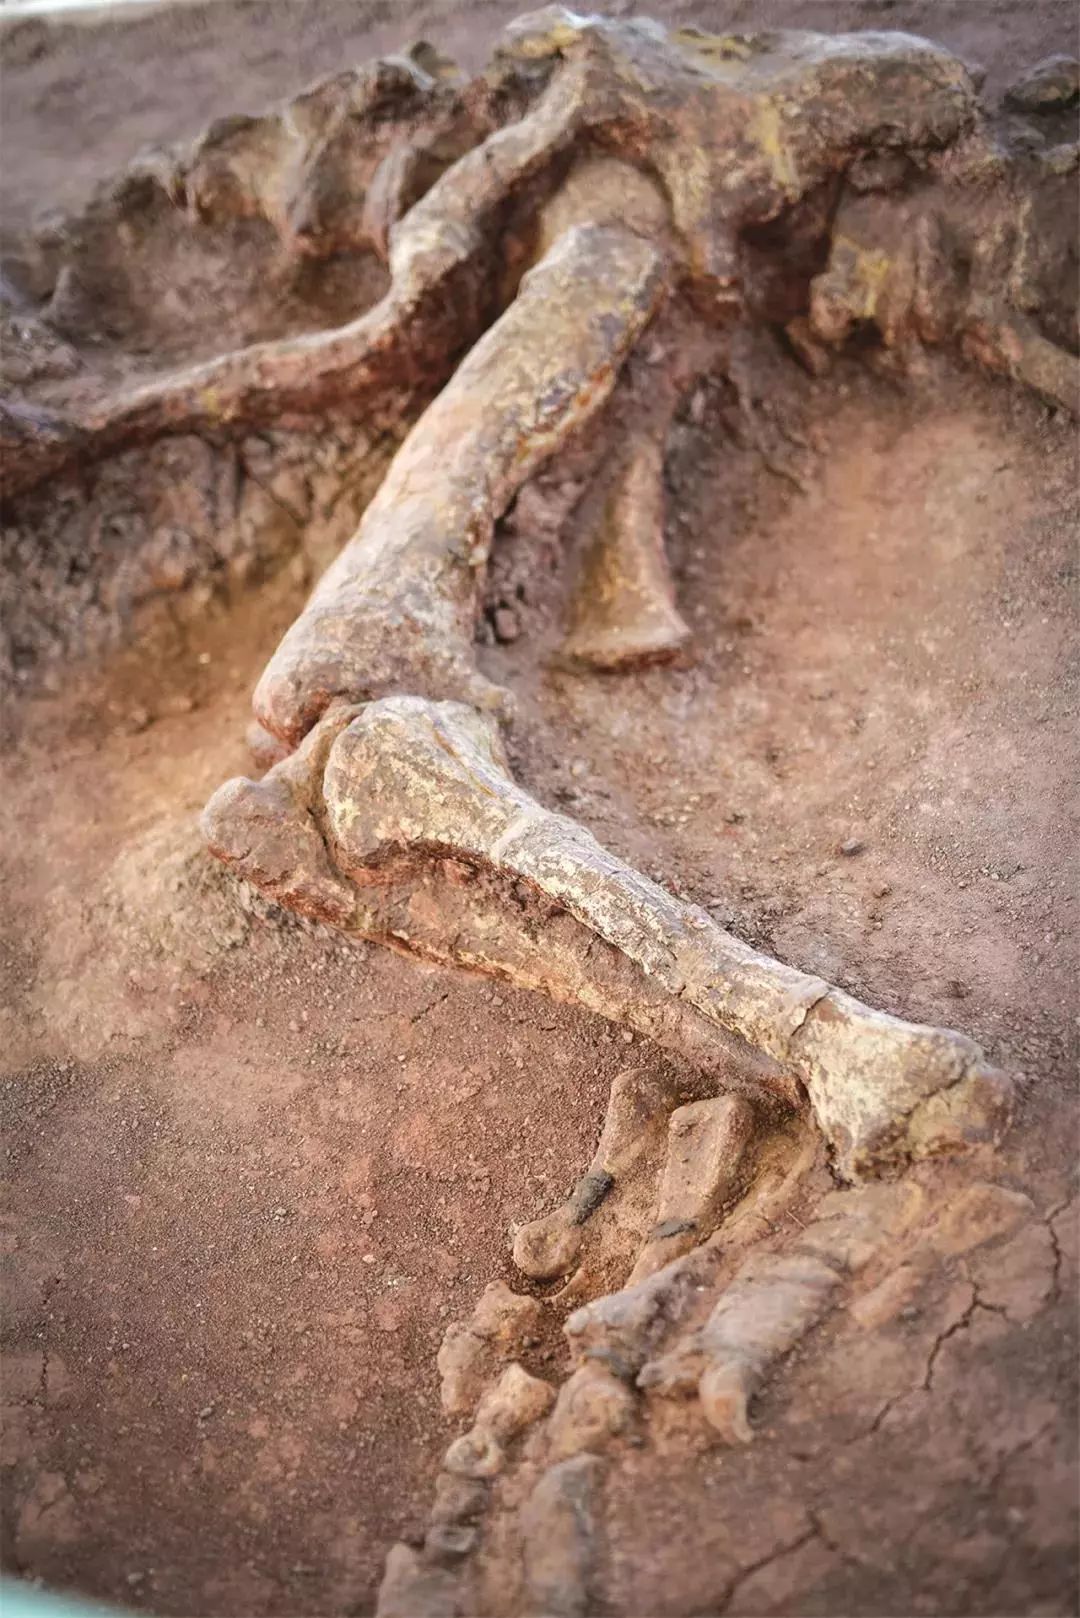 禄丰恐龙化石遗址图片